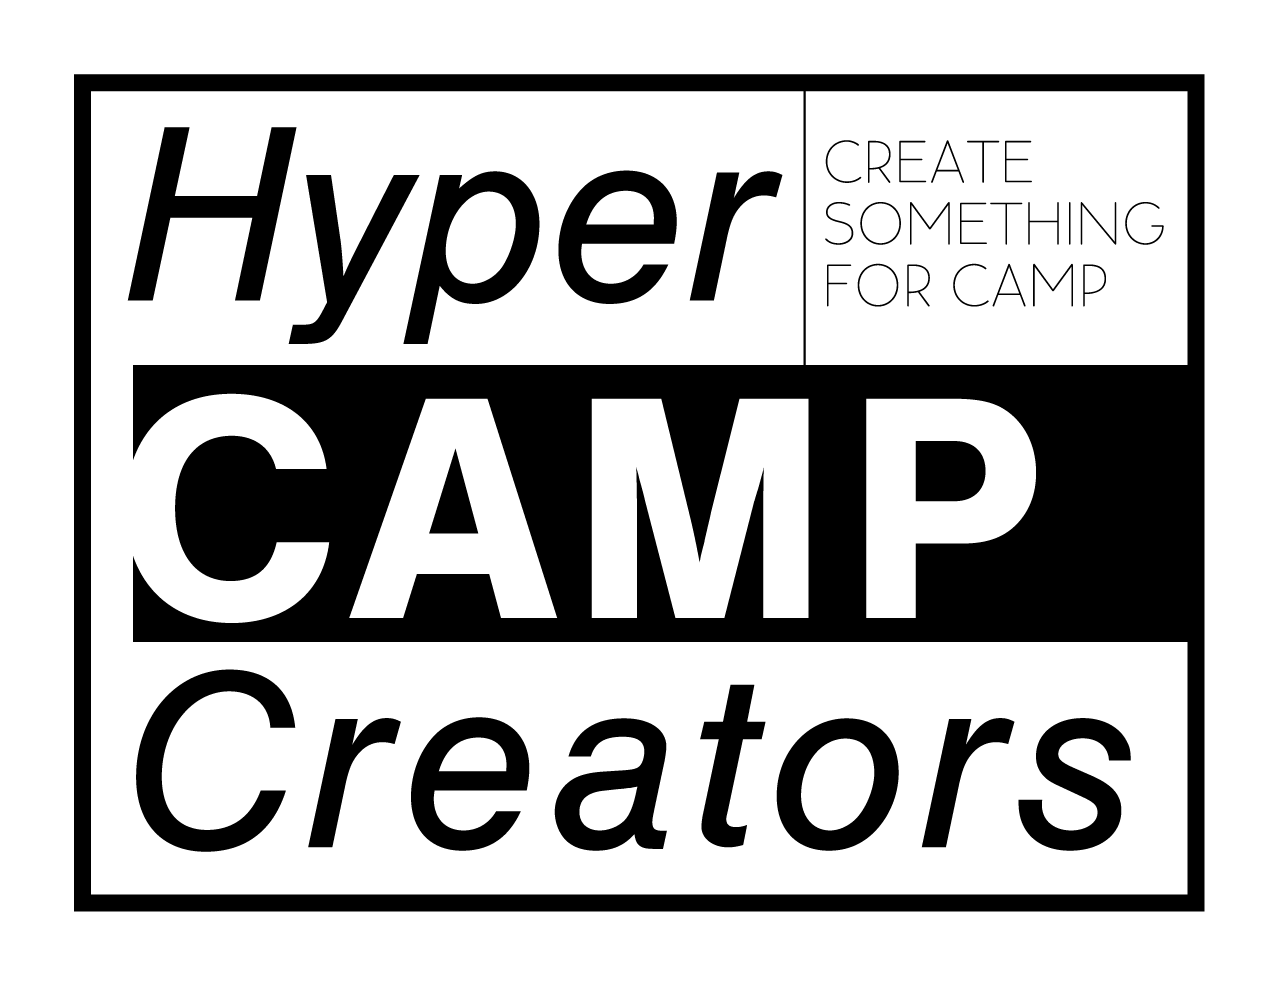 キャンプ初心者向け総合情報ブログ　Hyper Camp Creators